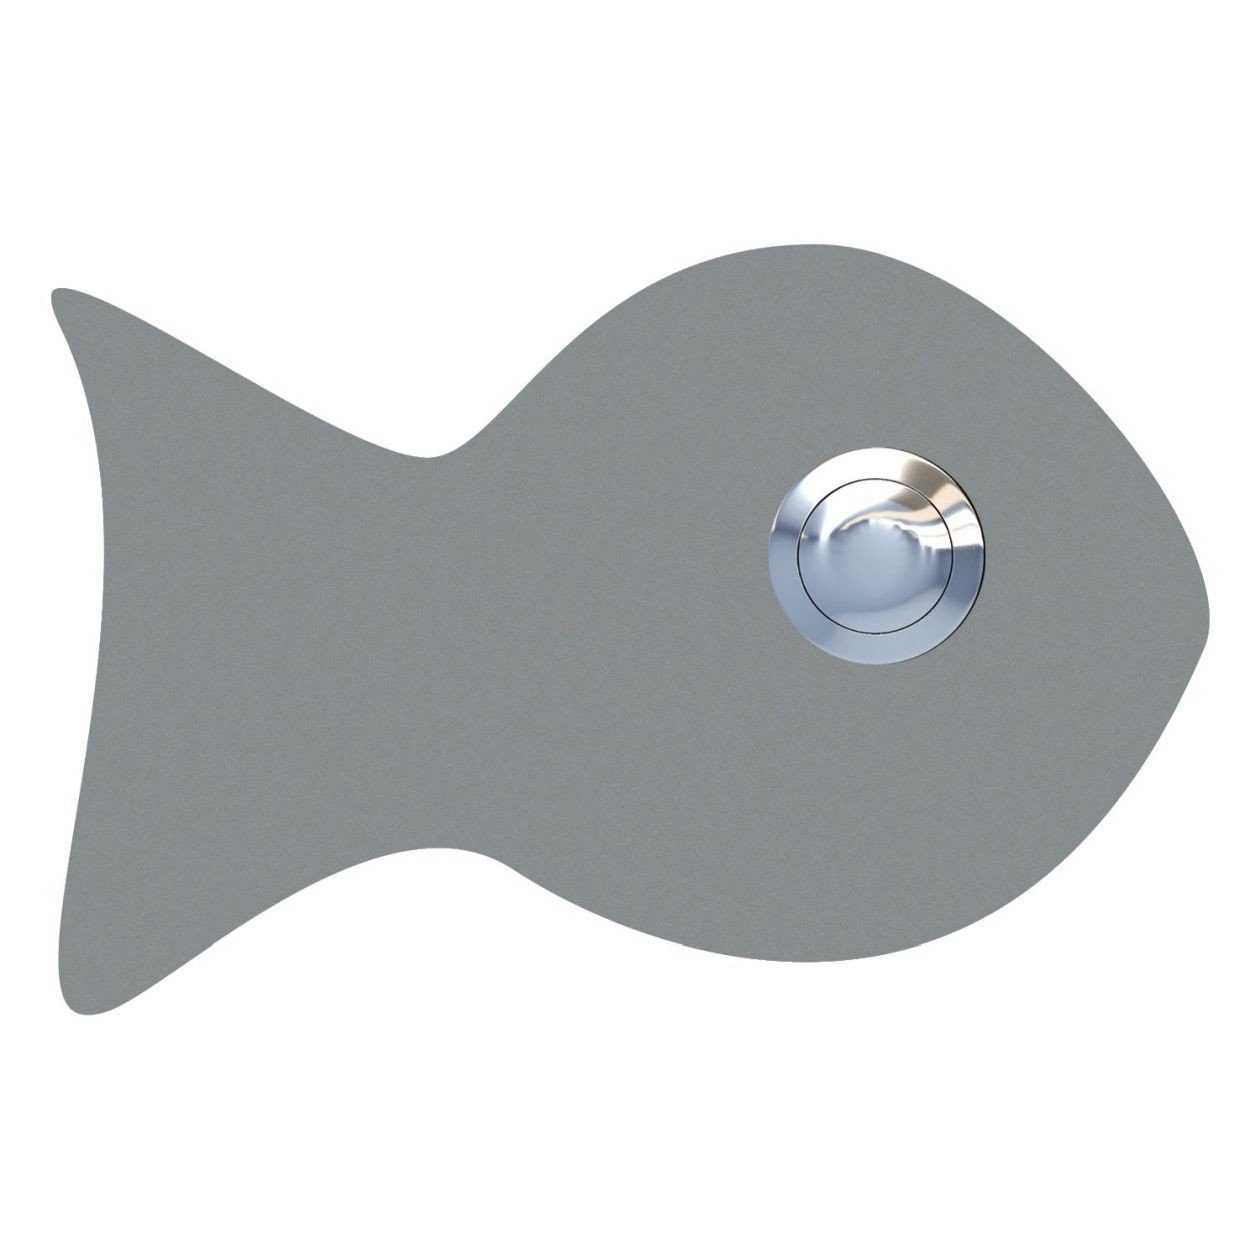 Bravios Briefkasten Fisch Grau Klingeltaster Metallic